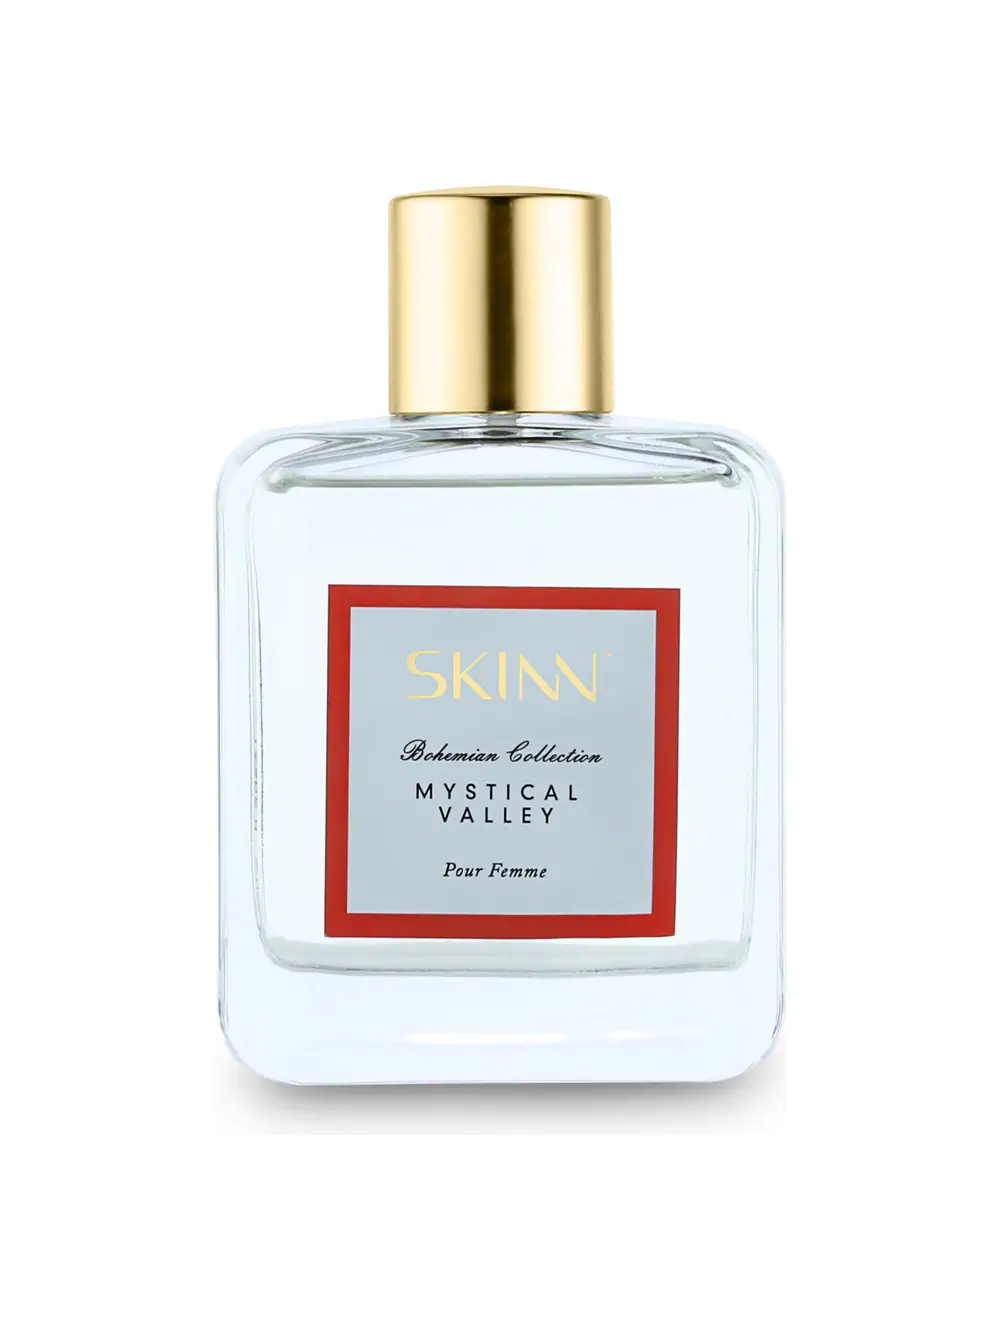 Skinn Bohemian Mystical Valley Fragrance for Women (100ml) - Niram